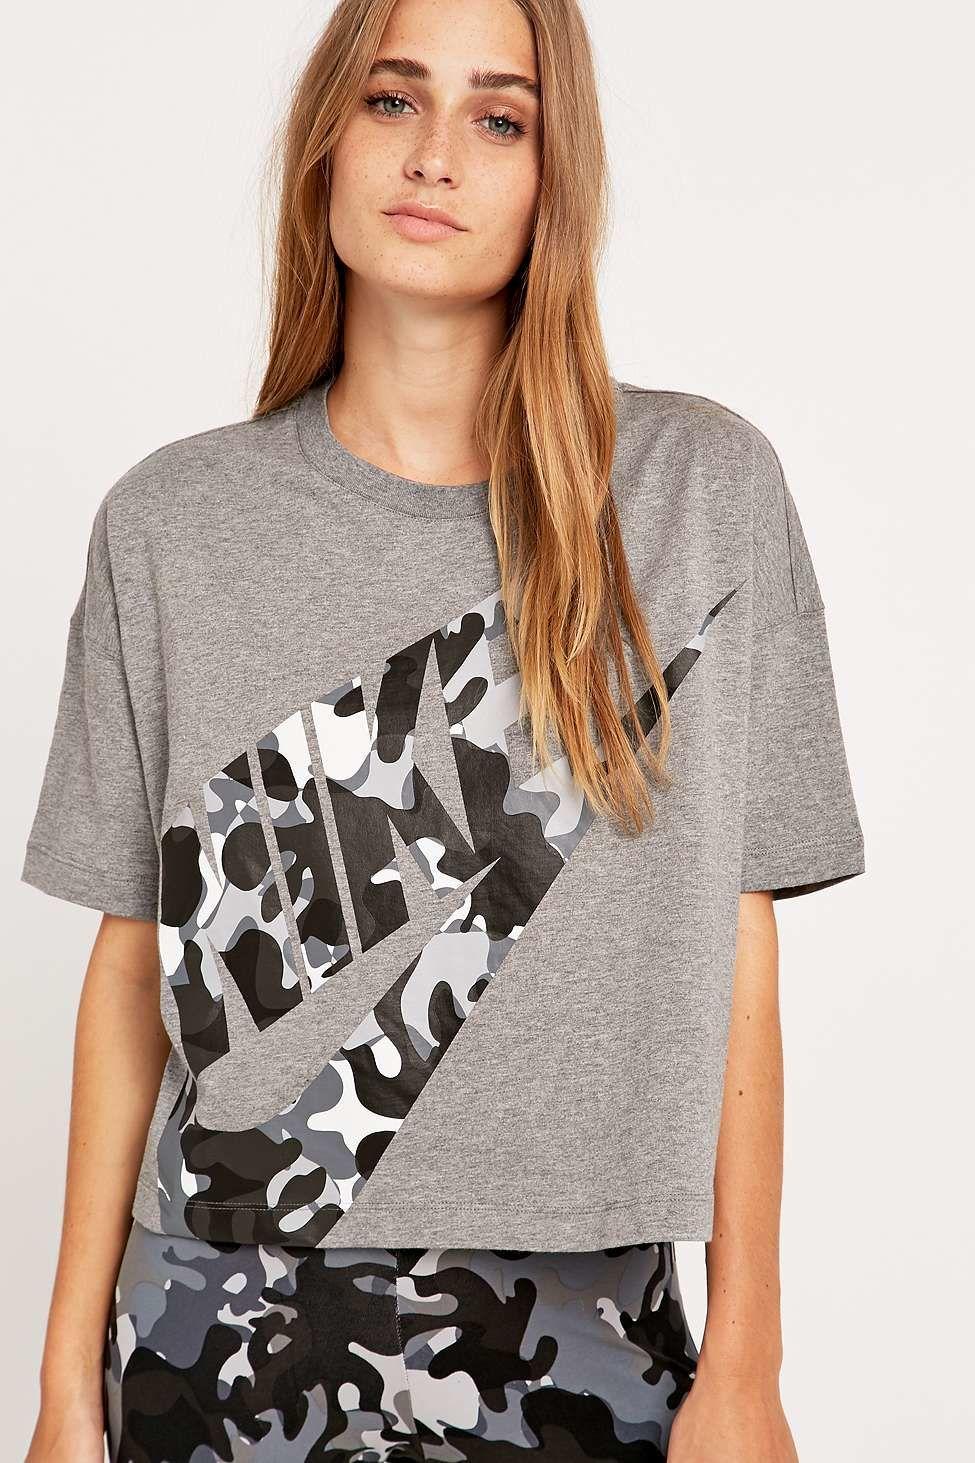 Nike Gray Camo Logo - Nike Camo Logo Cropped Grey T Shirt In Gray